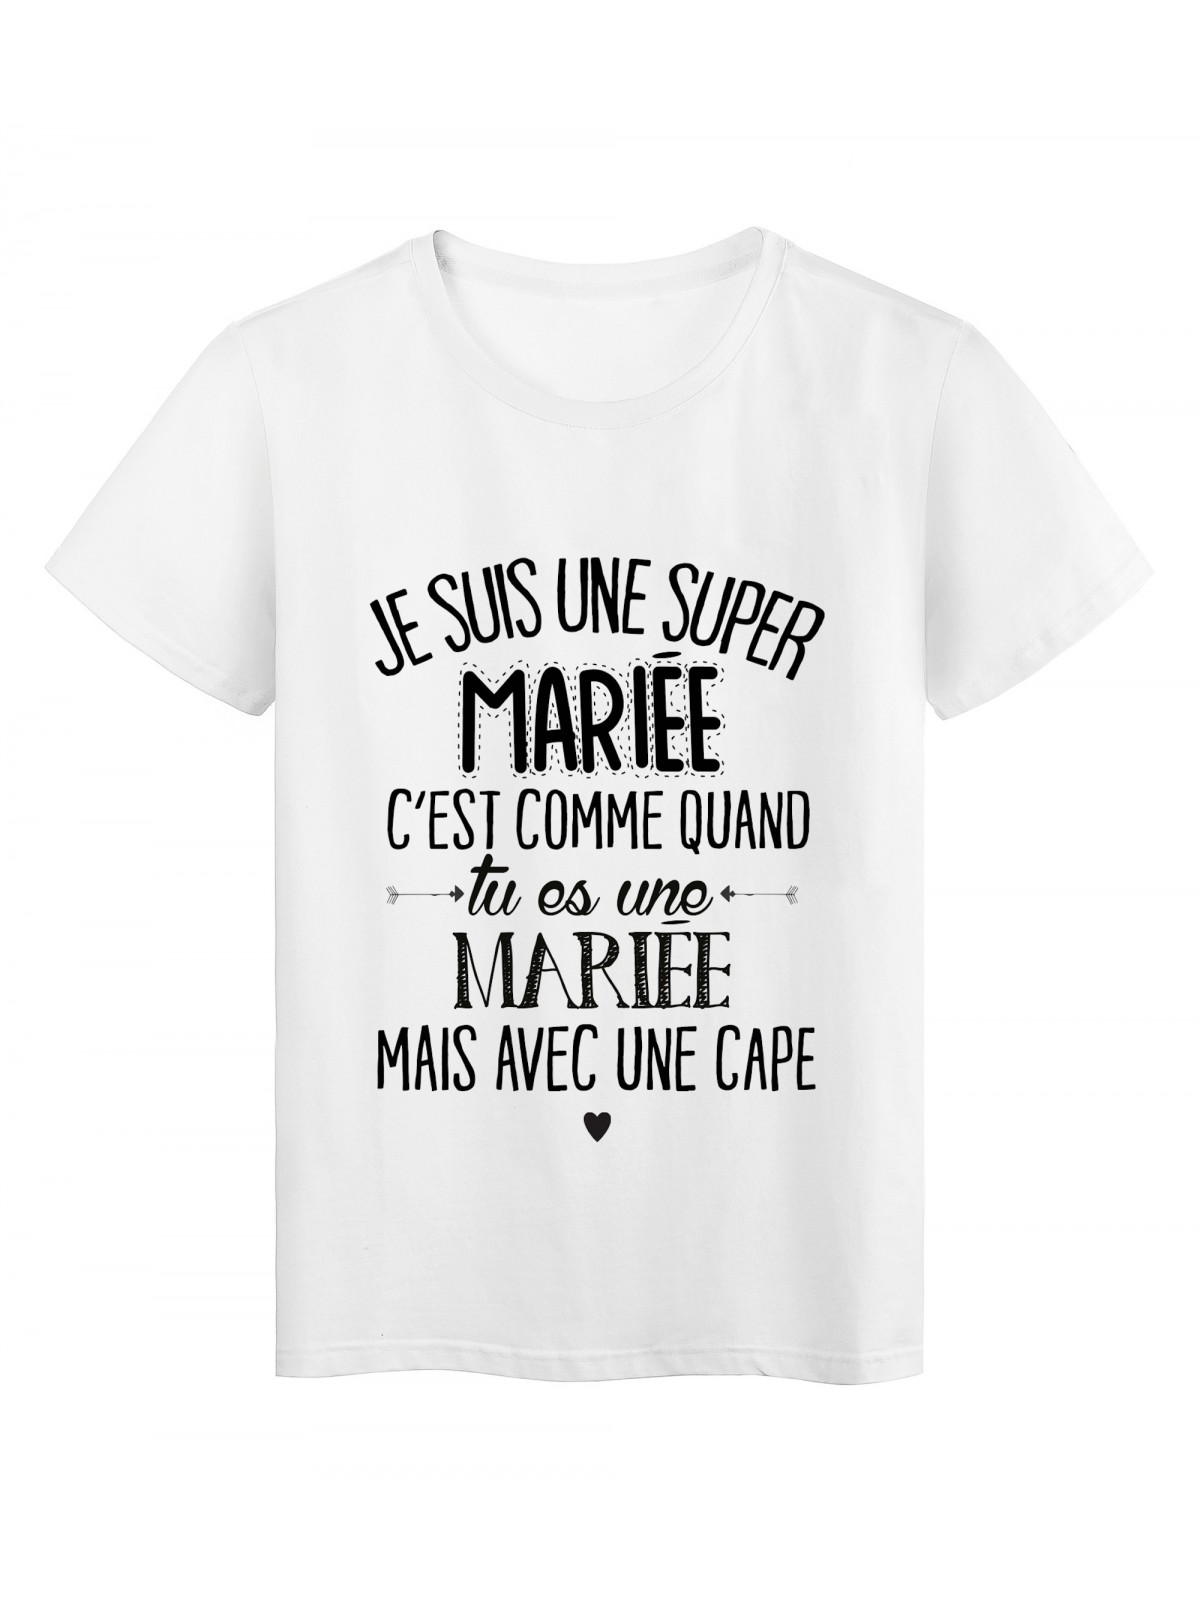 T-Shirt citation Je suis une super MARIEE